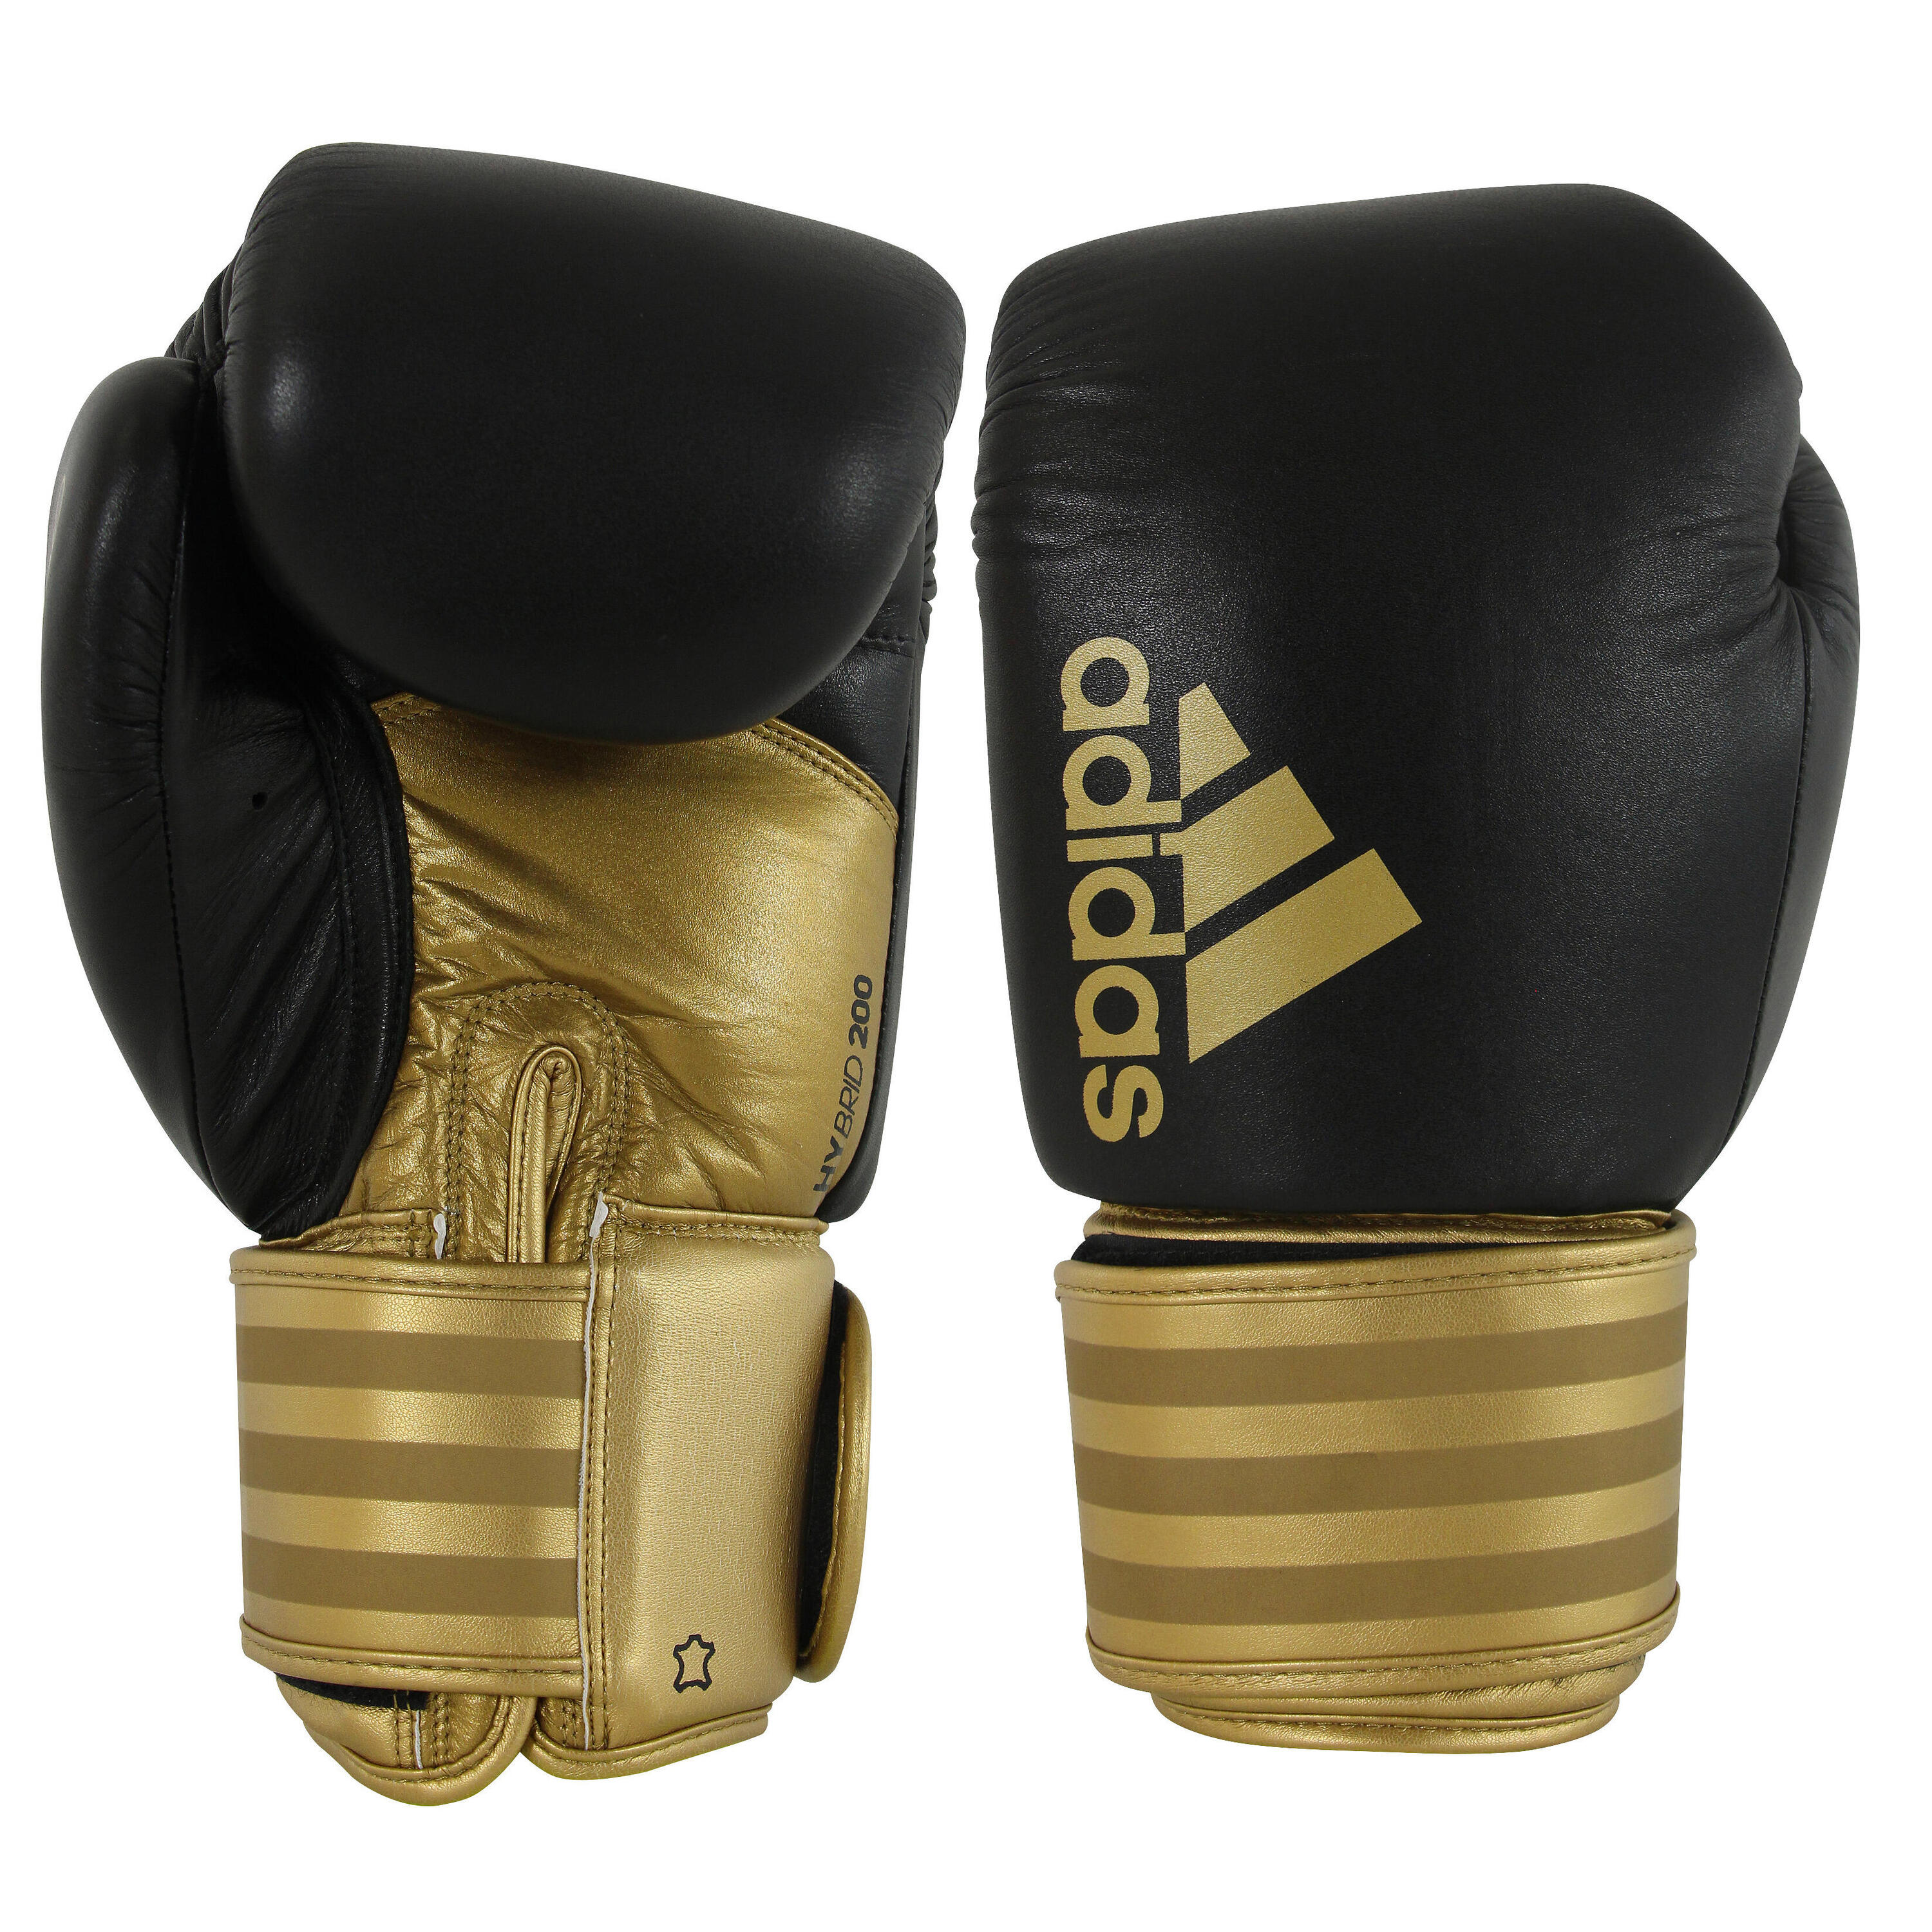 Боксерские перчатки Adidas Hybrid 200, 16 унций. боксерские перчатки infinite force dark ice 10 унций